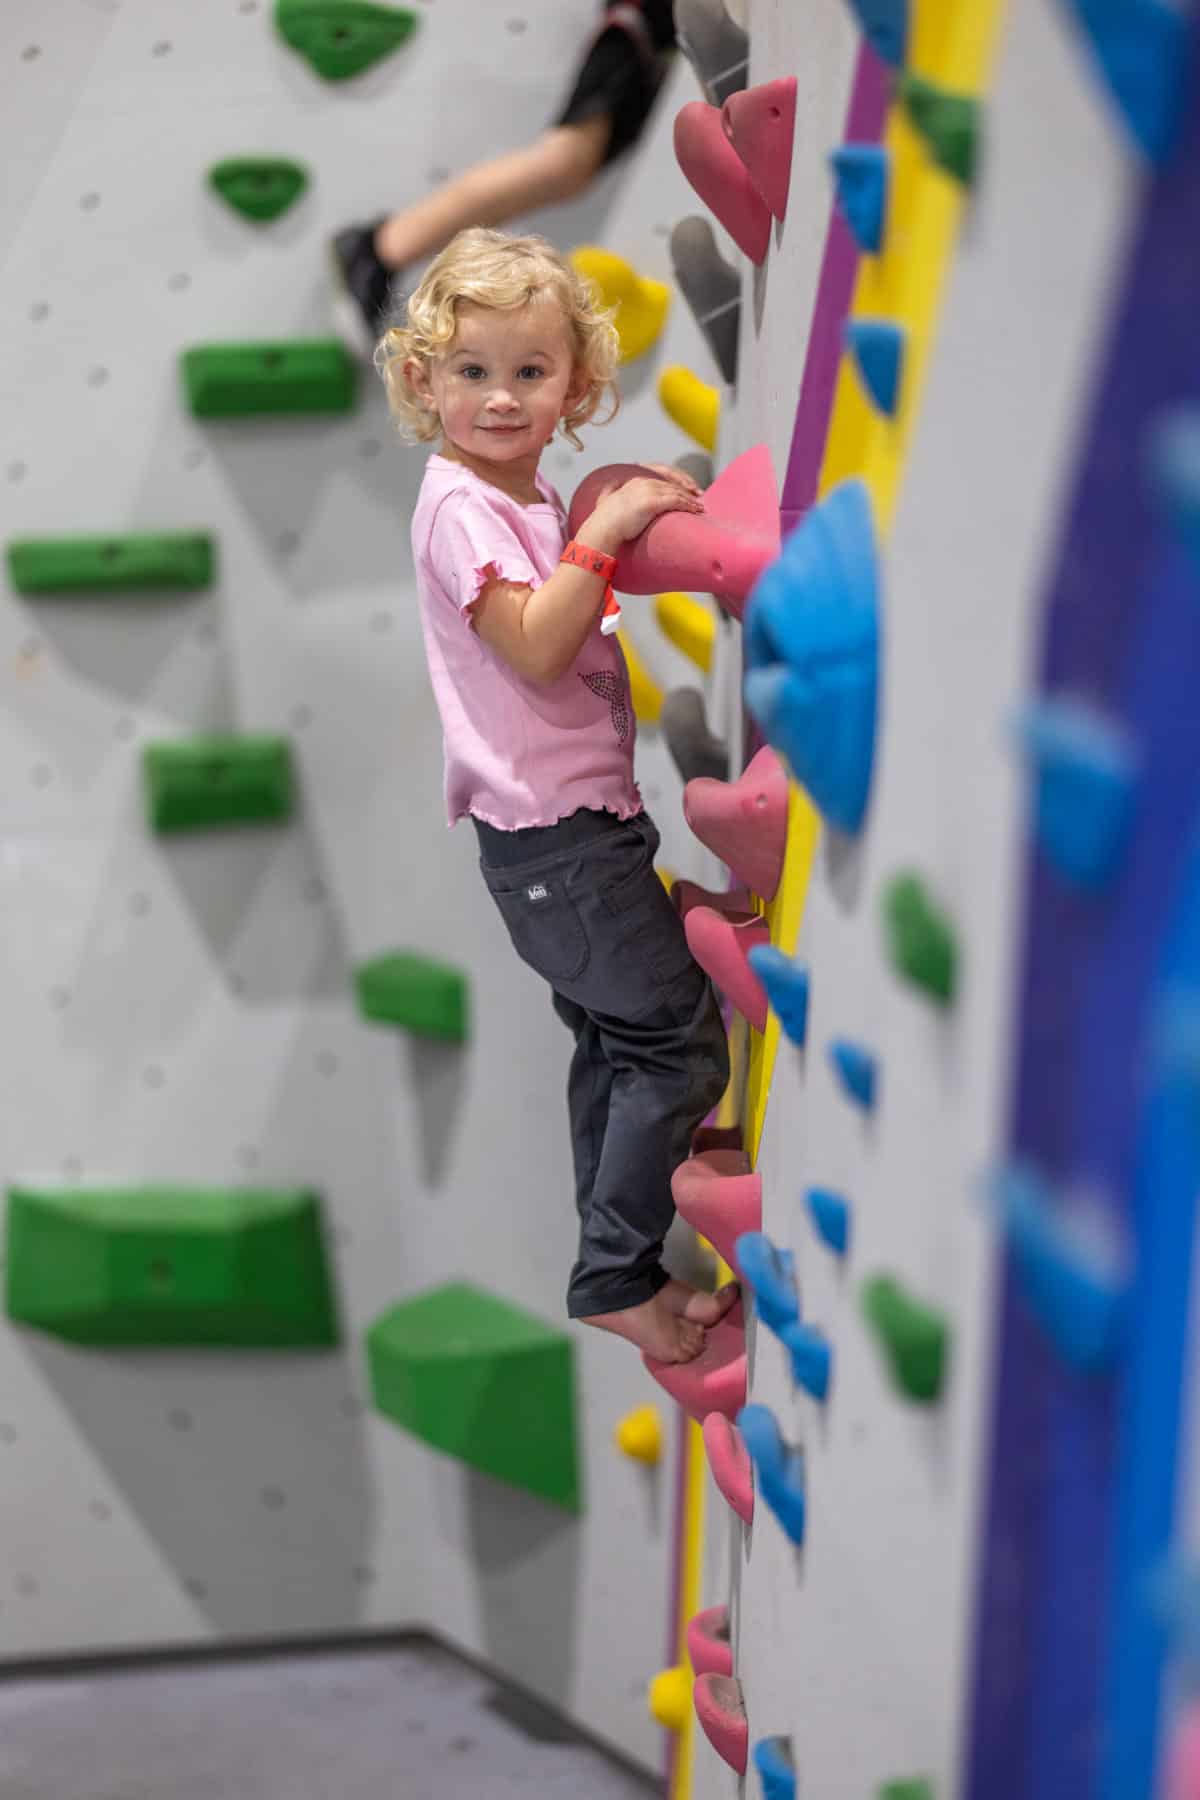 best kids activities - indoor rock climbing 